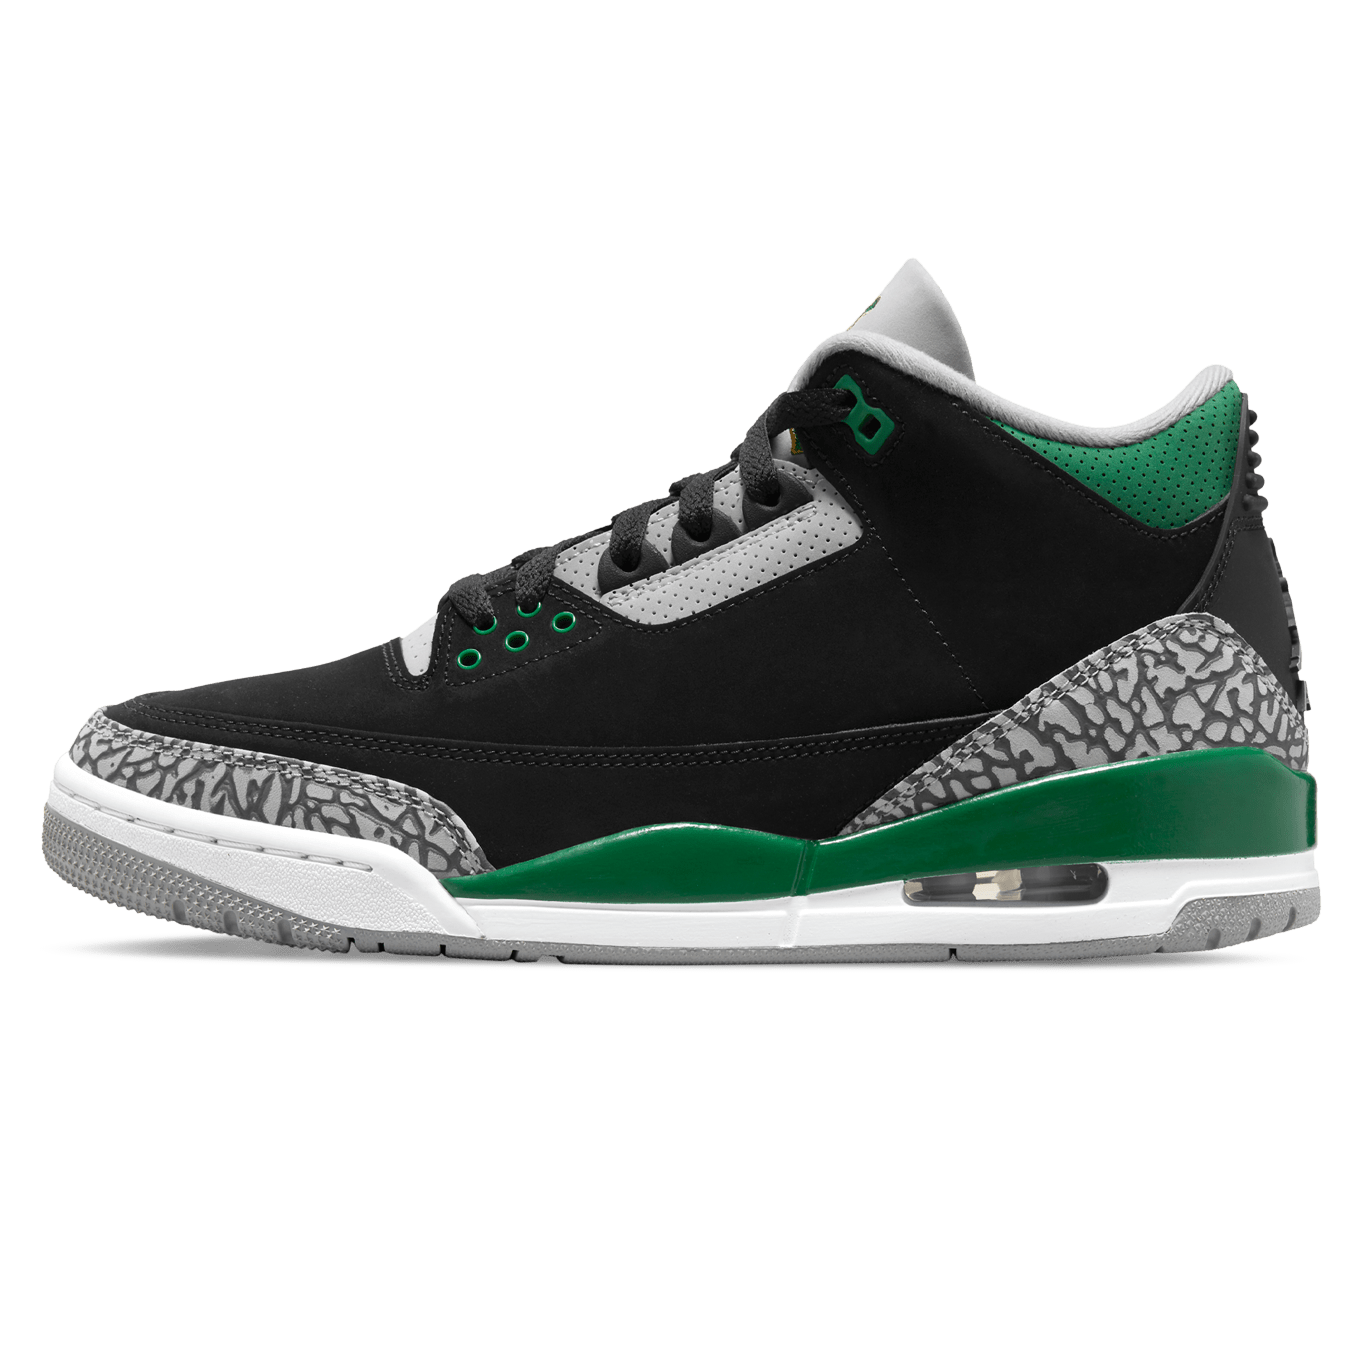 gray and green jordan 3s